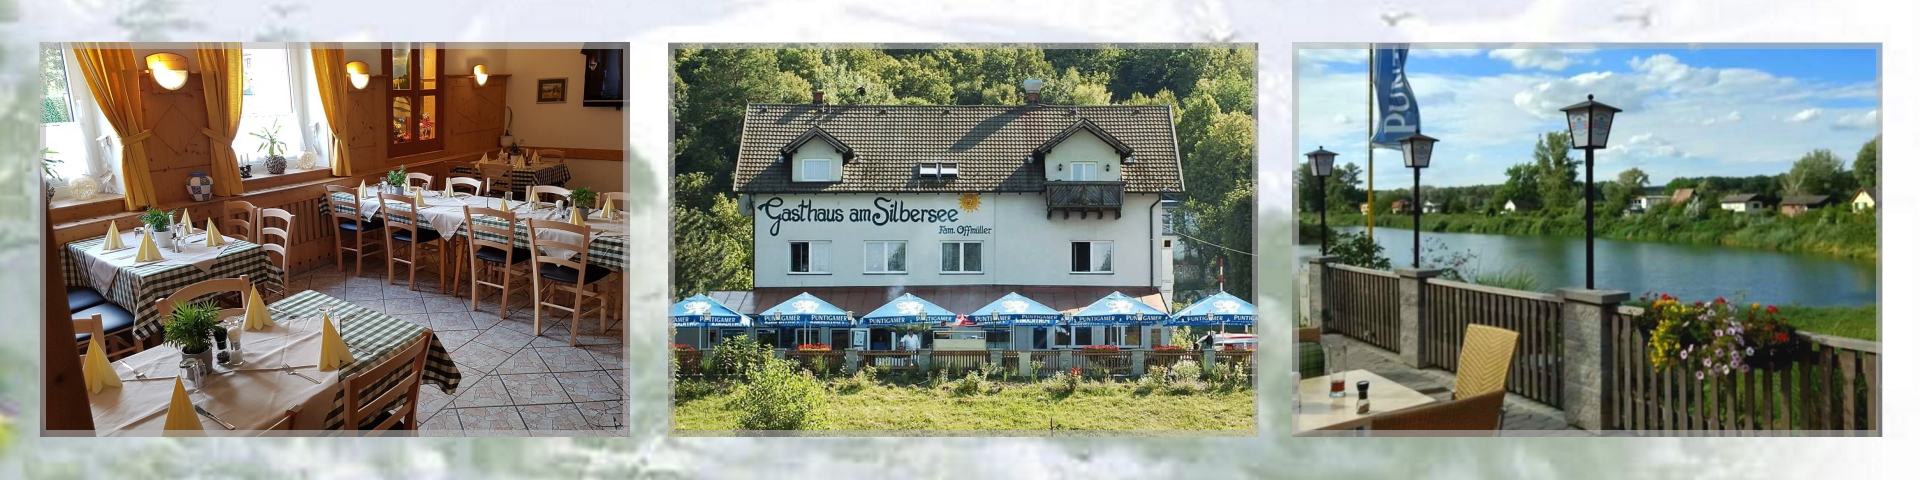 Impressionen Gasthaus Silbersee